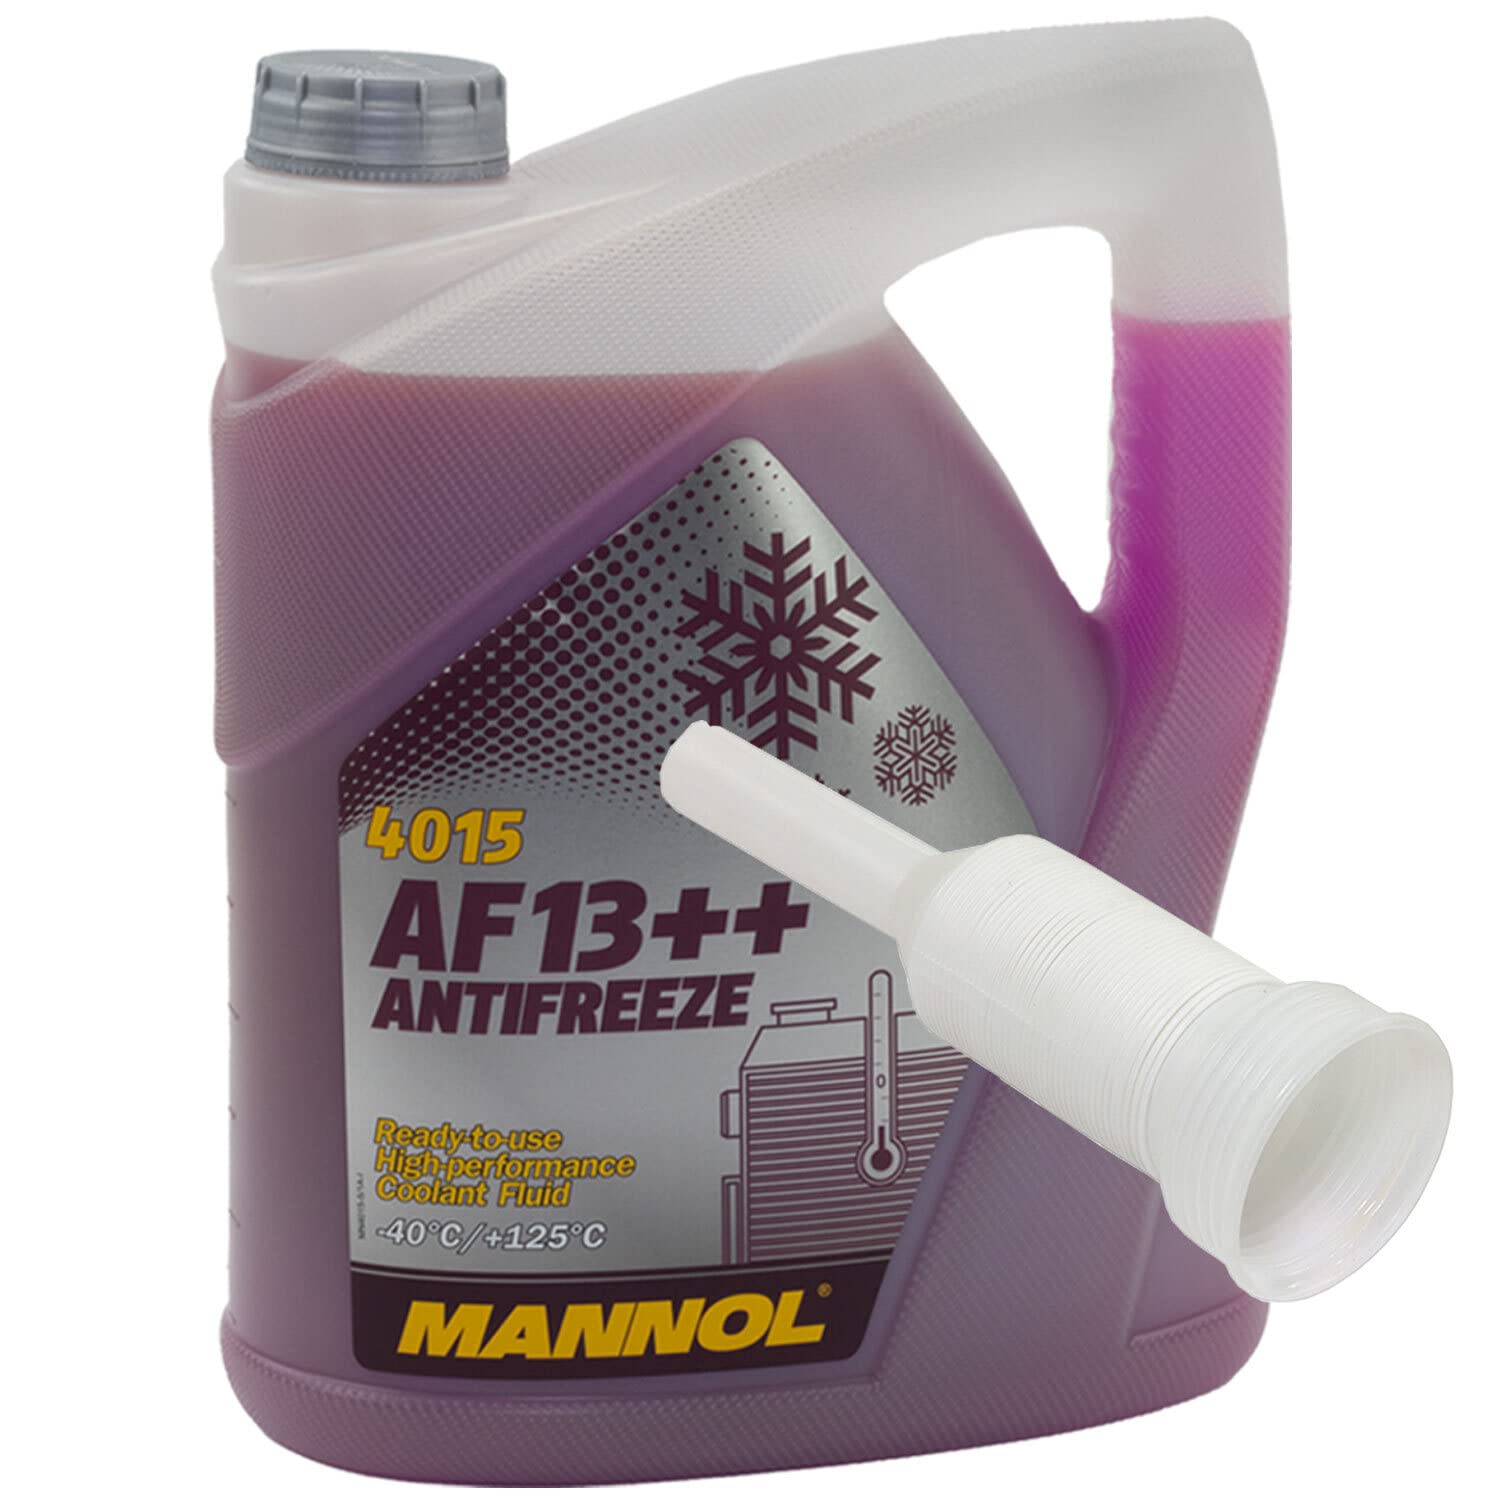 Kühlerfrostschutz MANNOL AF13++ Antifreeze 5 Liter Fertiggemisch -40°C rot mit Ausgießer von MVH Bockauf